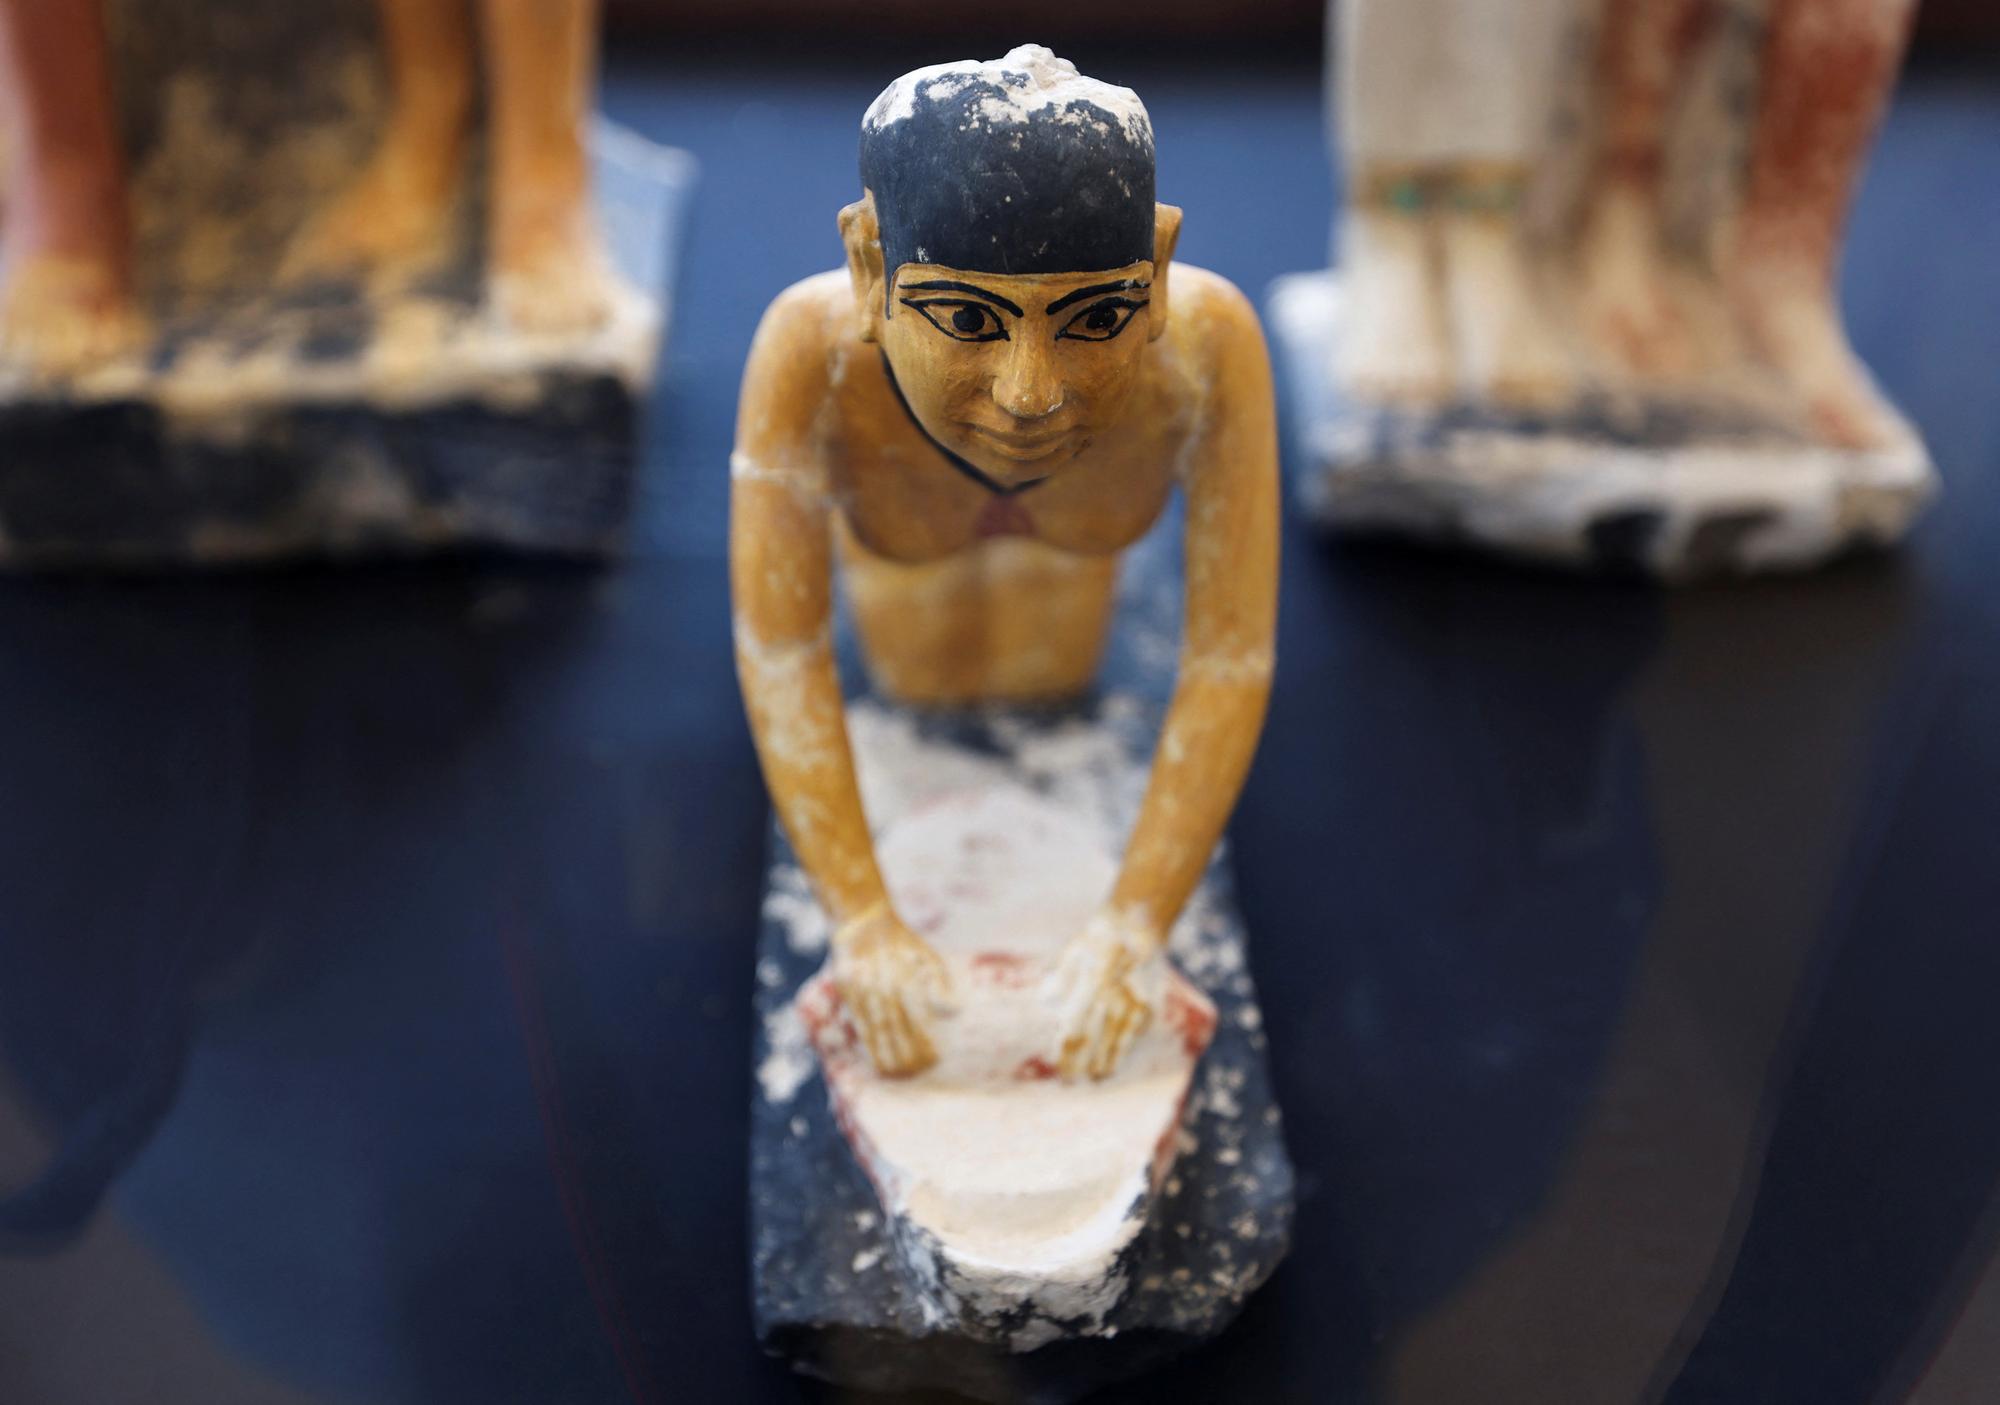 Une des statuettes exposées lors de la découverte de tombes à Saqqara, en Egypte. [REUTERS - Mohamed Abd El Ghany]